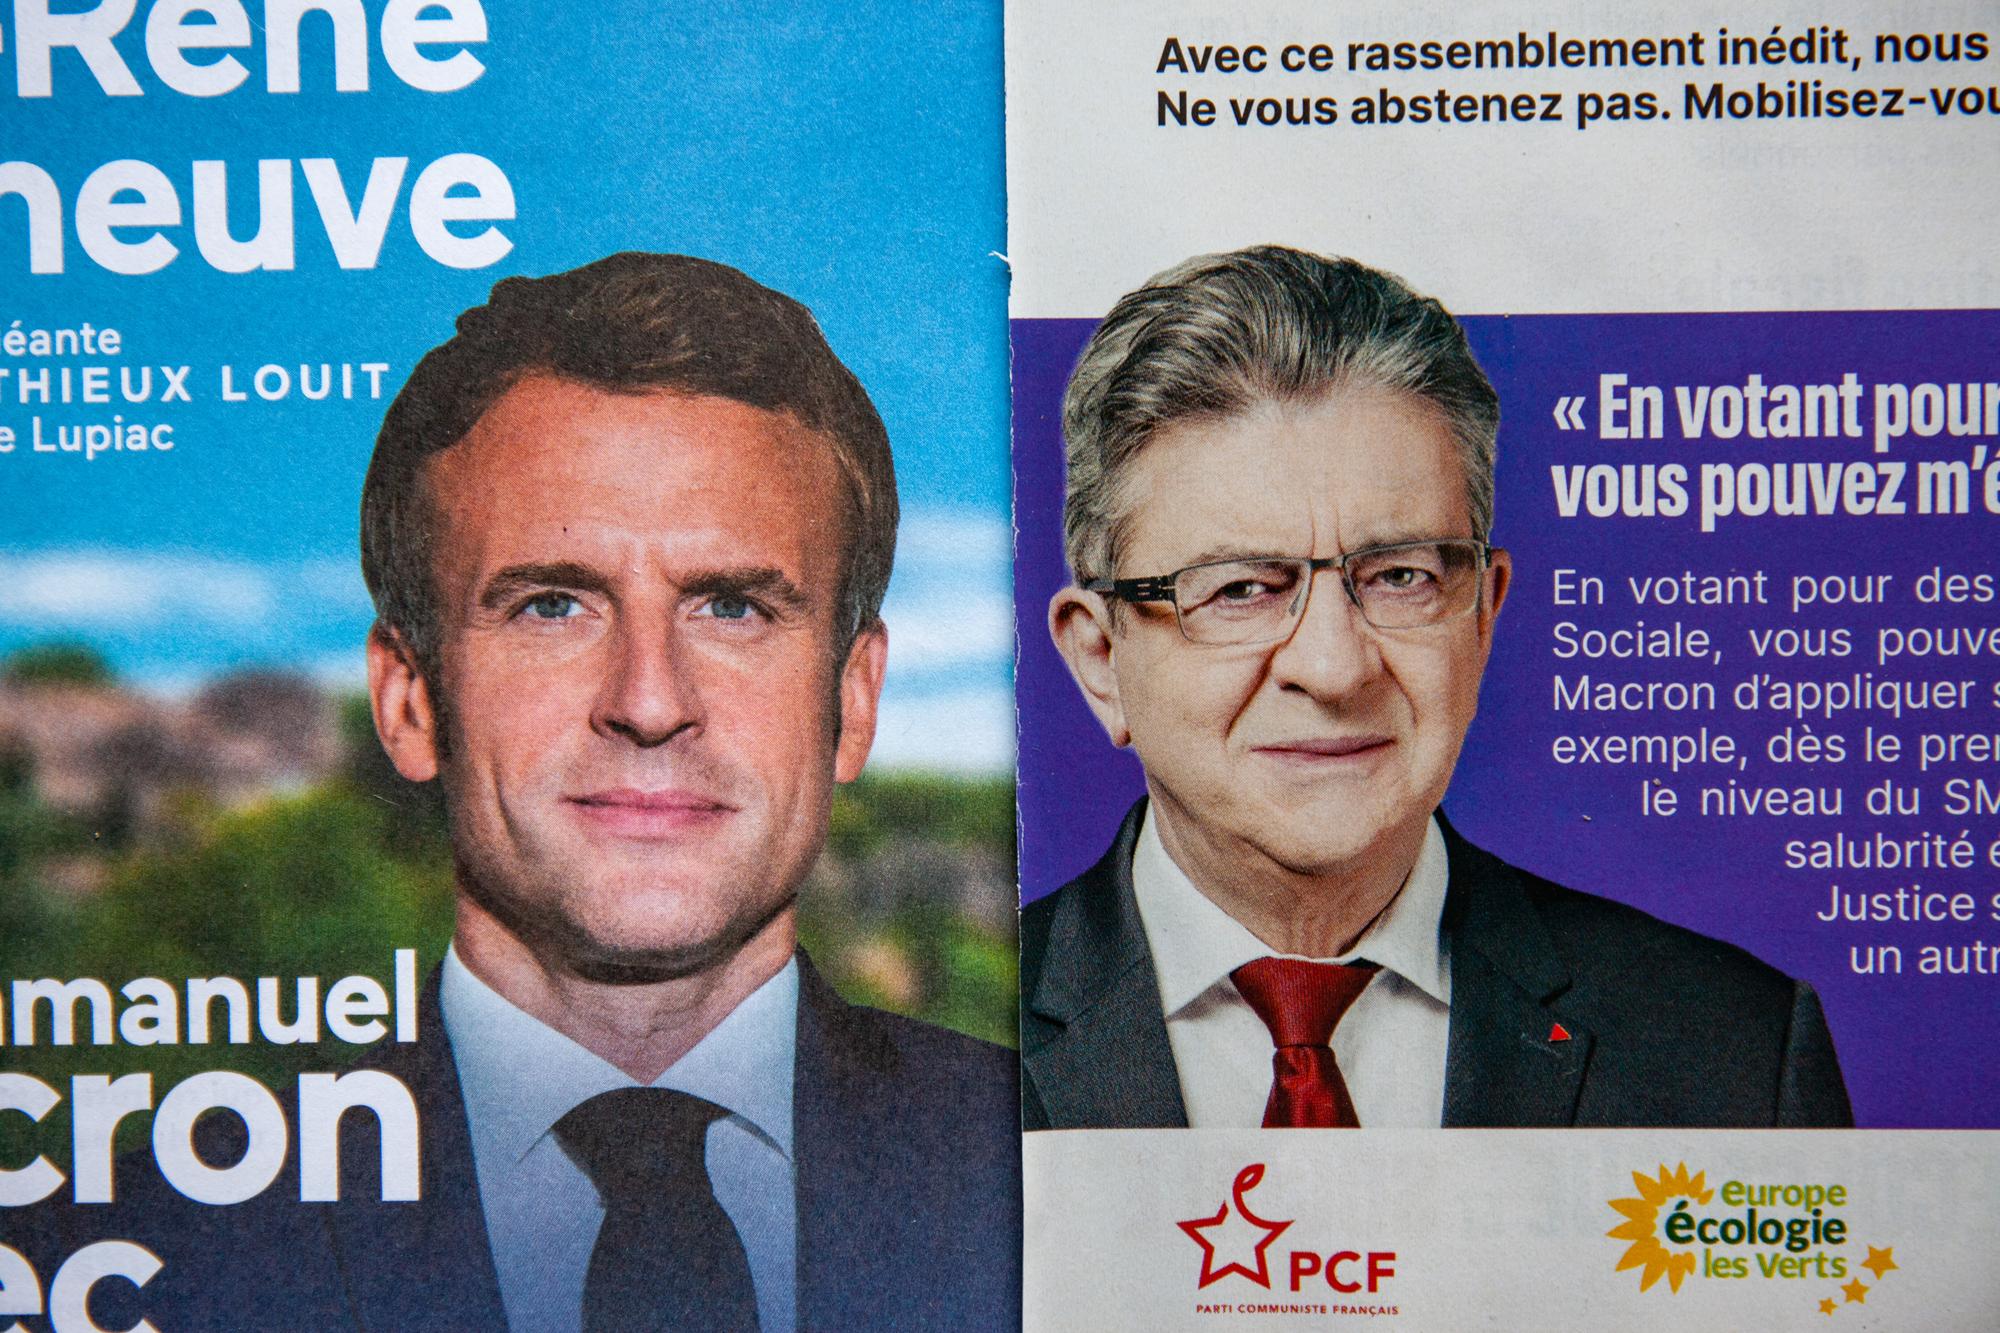 Au final, 21'000 petites voix ont séparé les pro-Macron des pro-Mélenchon. [AFP - Jean-Marc Barrere / Hans Lucas]